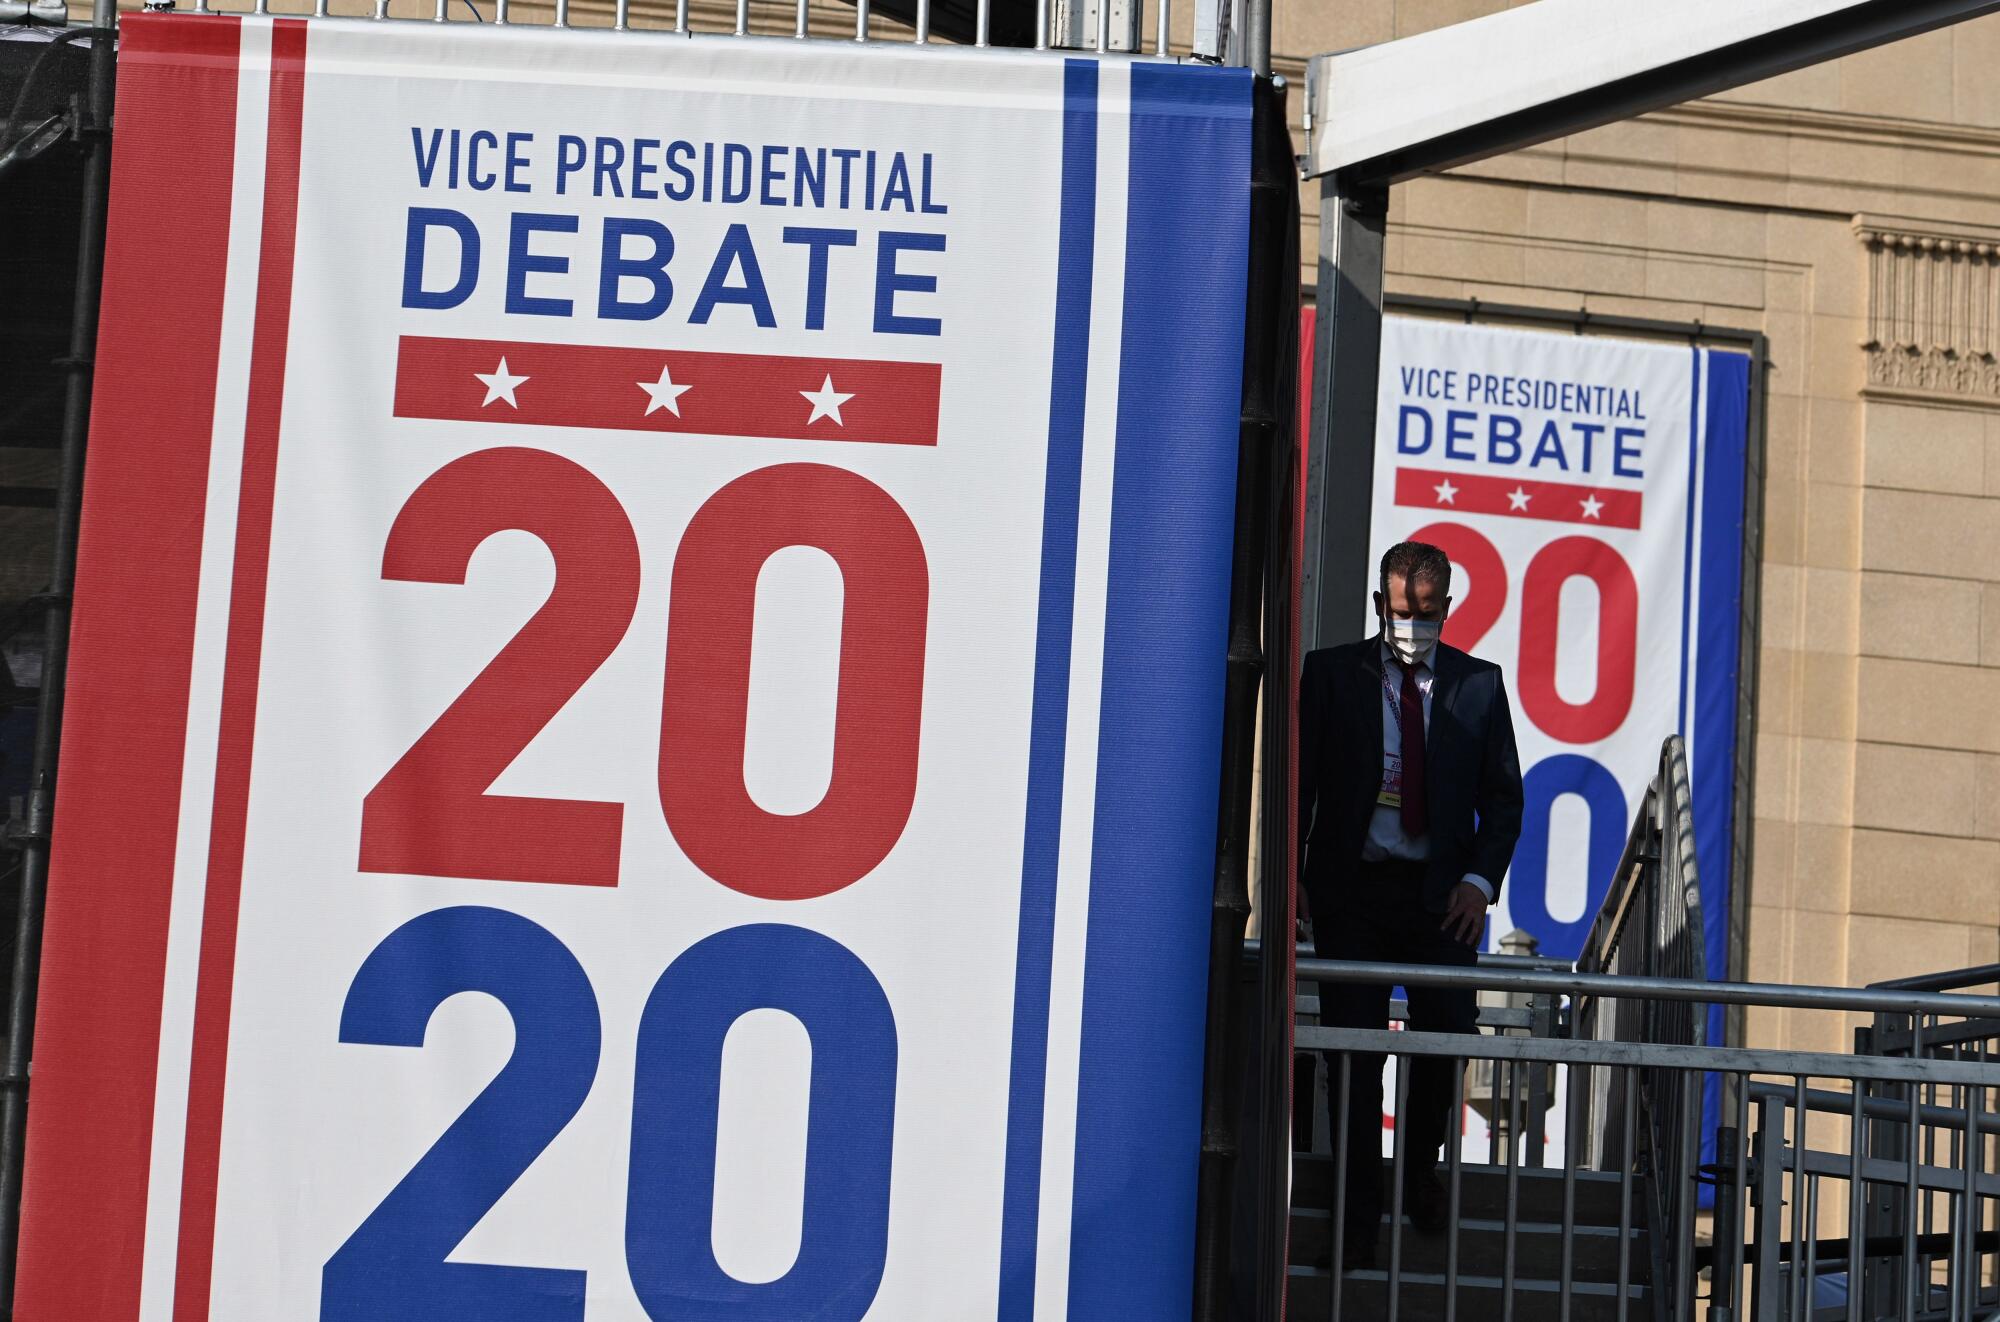 Signs outside the debate hall say Vice Presidential Debate 2020